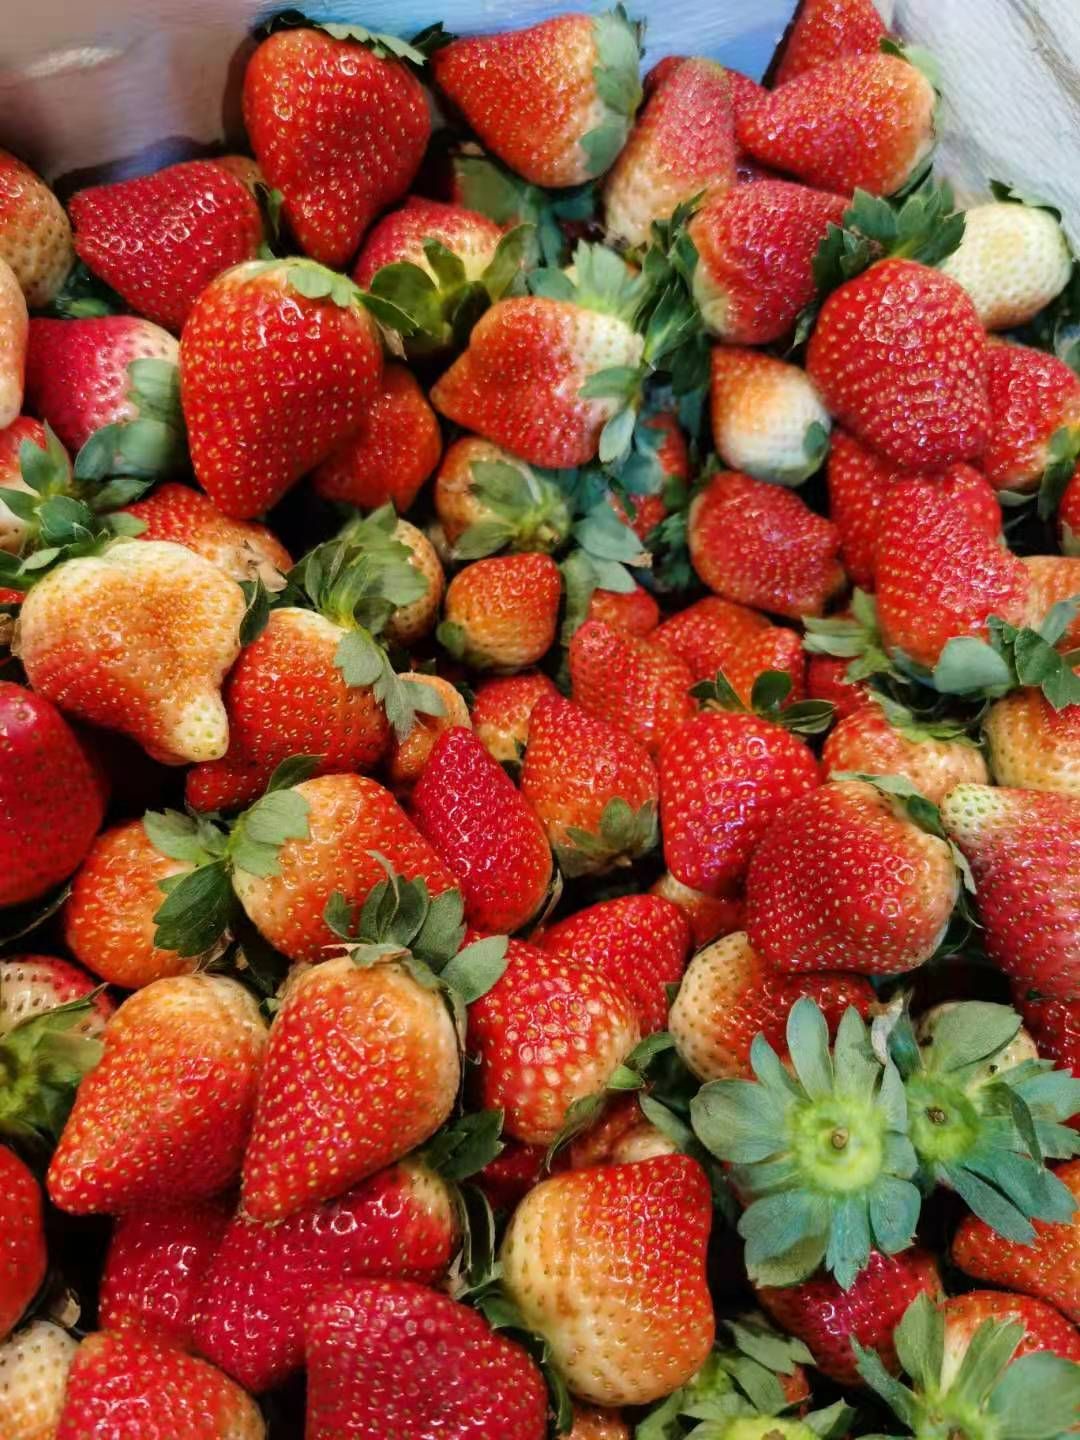 安岳县法兰地草莓 法兰蒂草莓